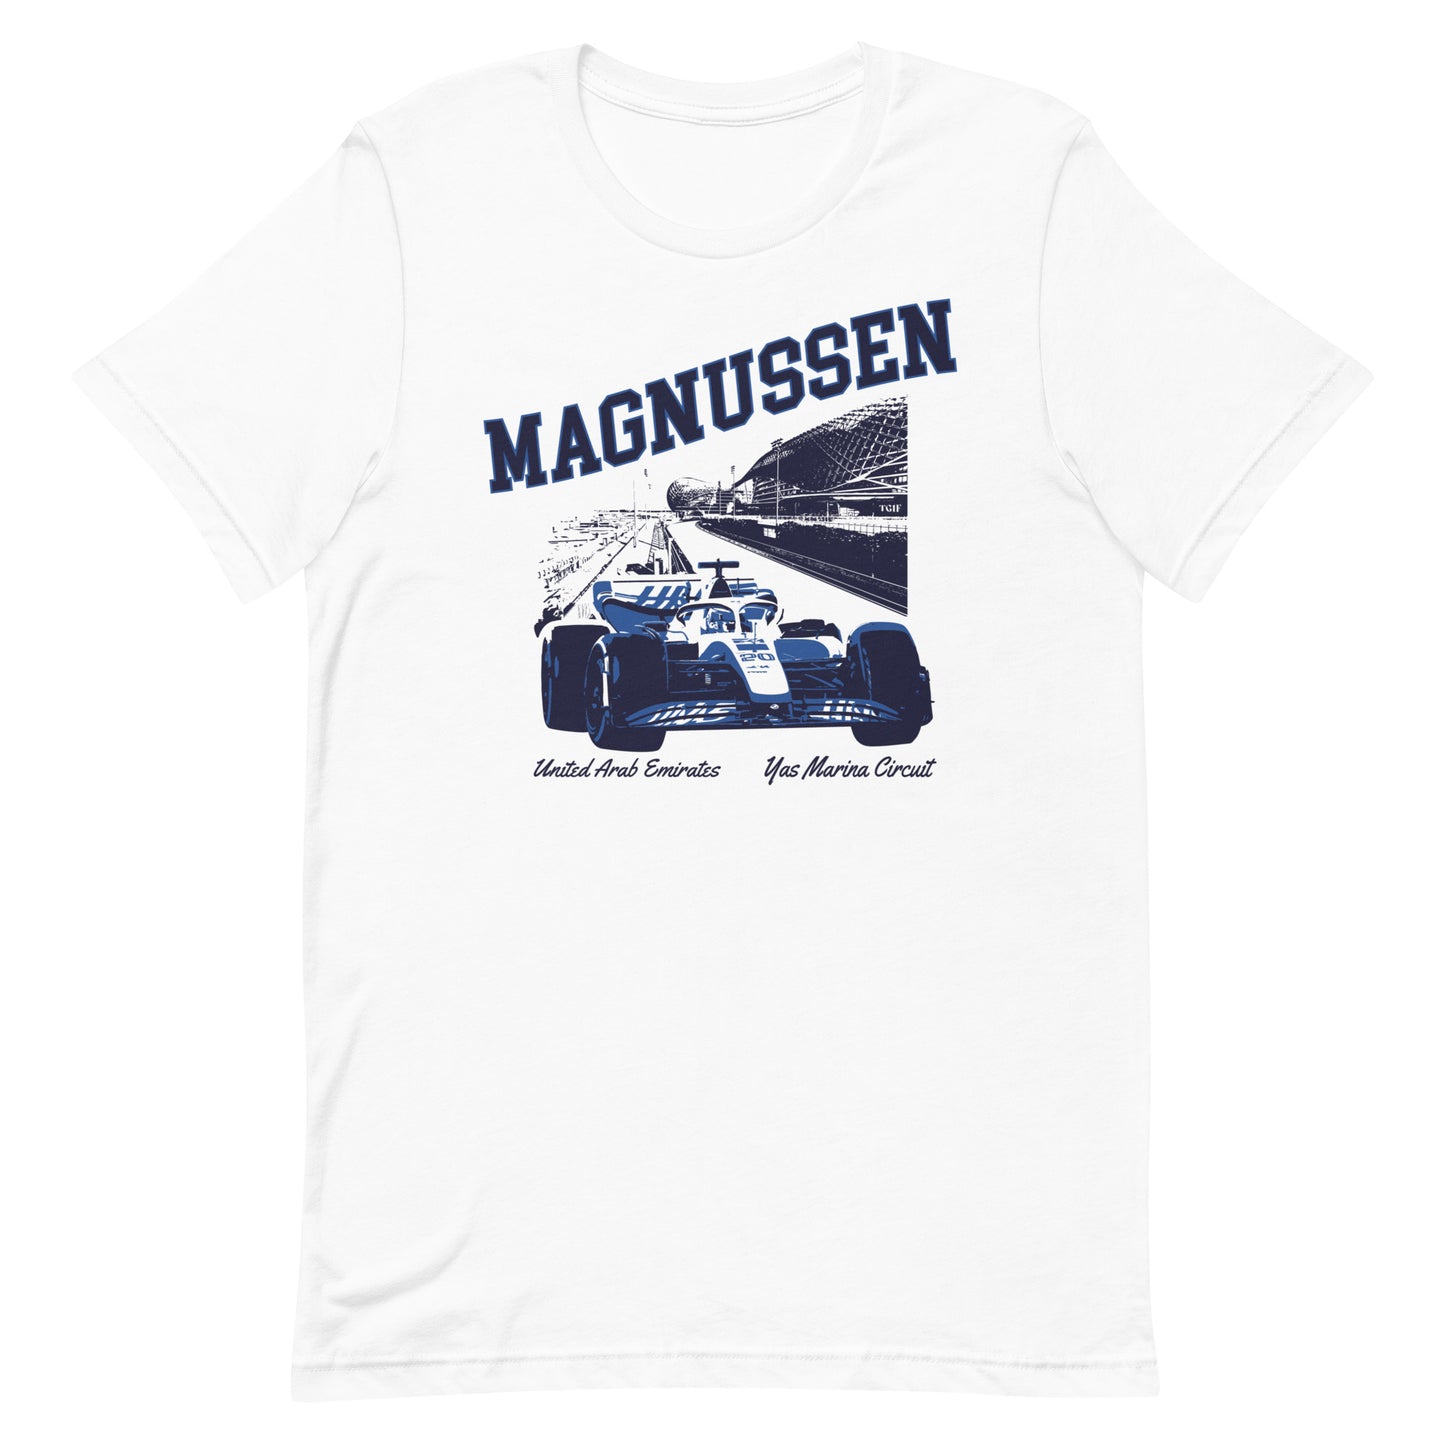 Magnussen Driver Shirt